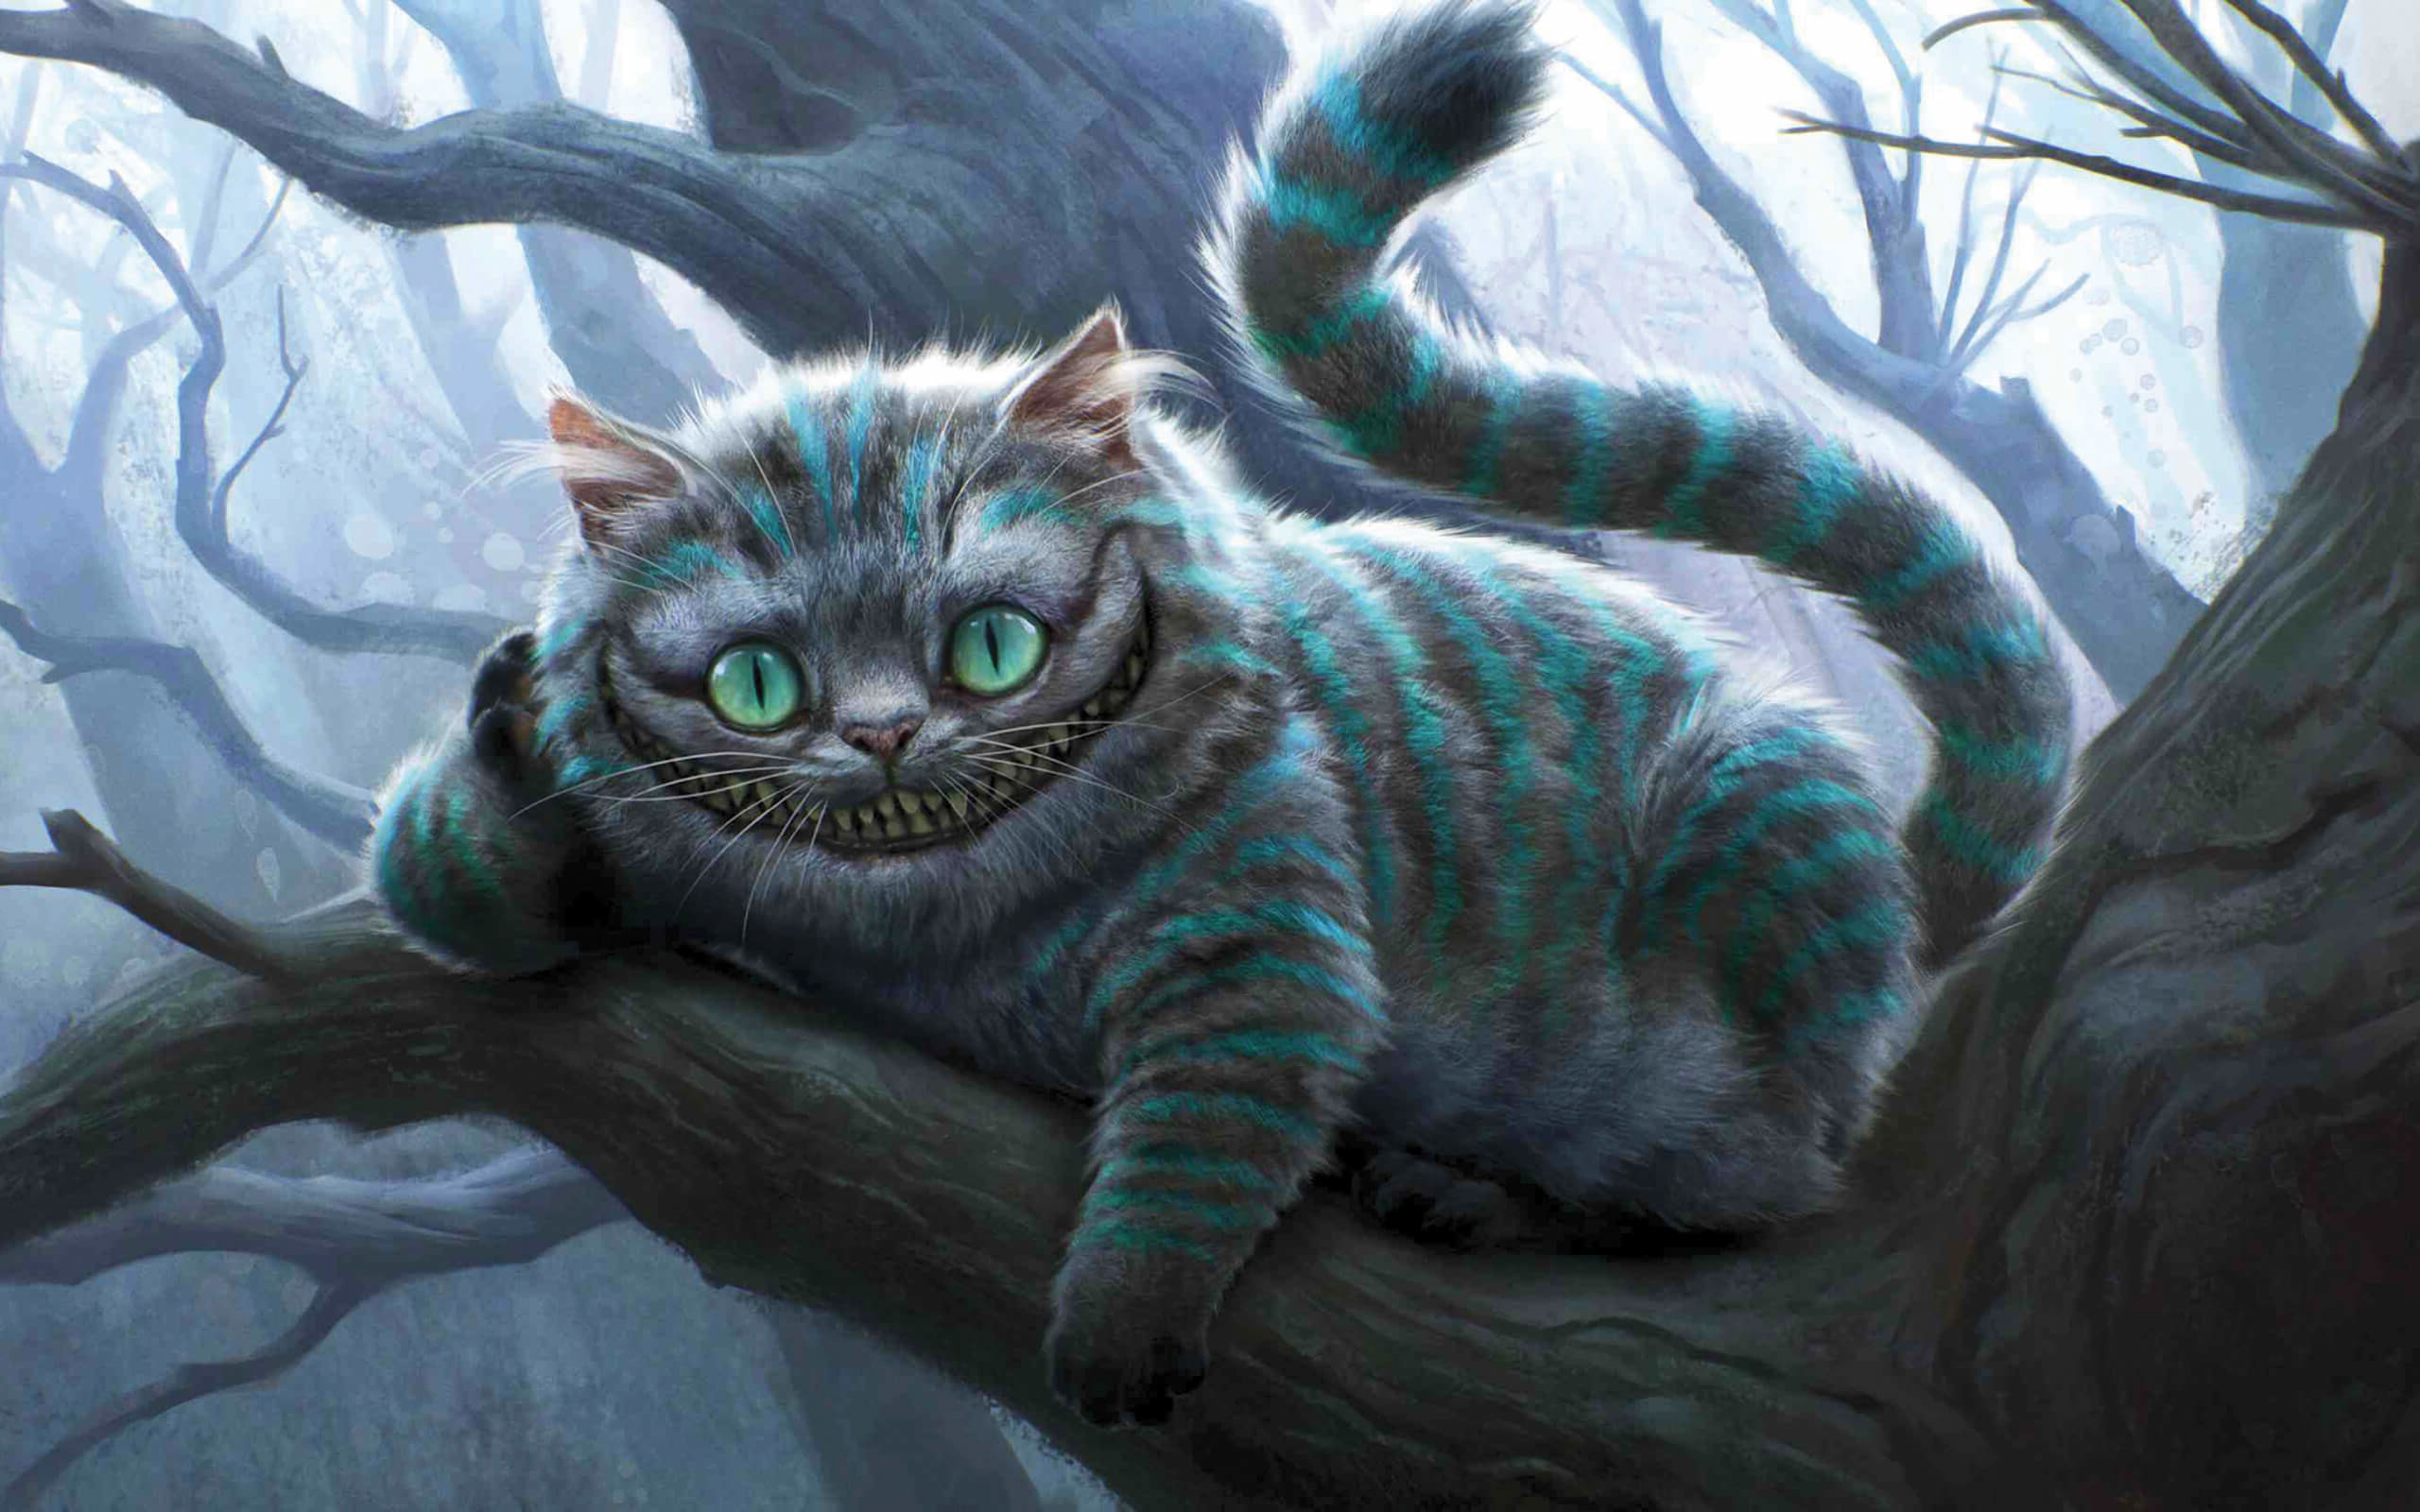 14 Cheshire cat wallpaper ideas  cheshire cat wallpaper cat wallpaper cheshire  cat